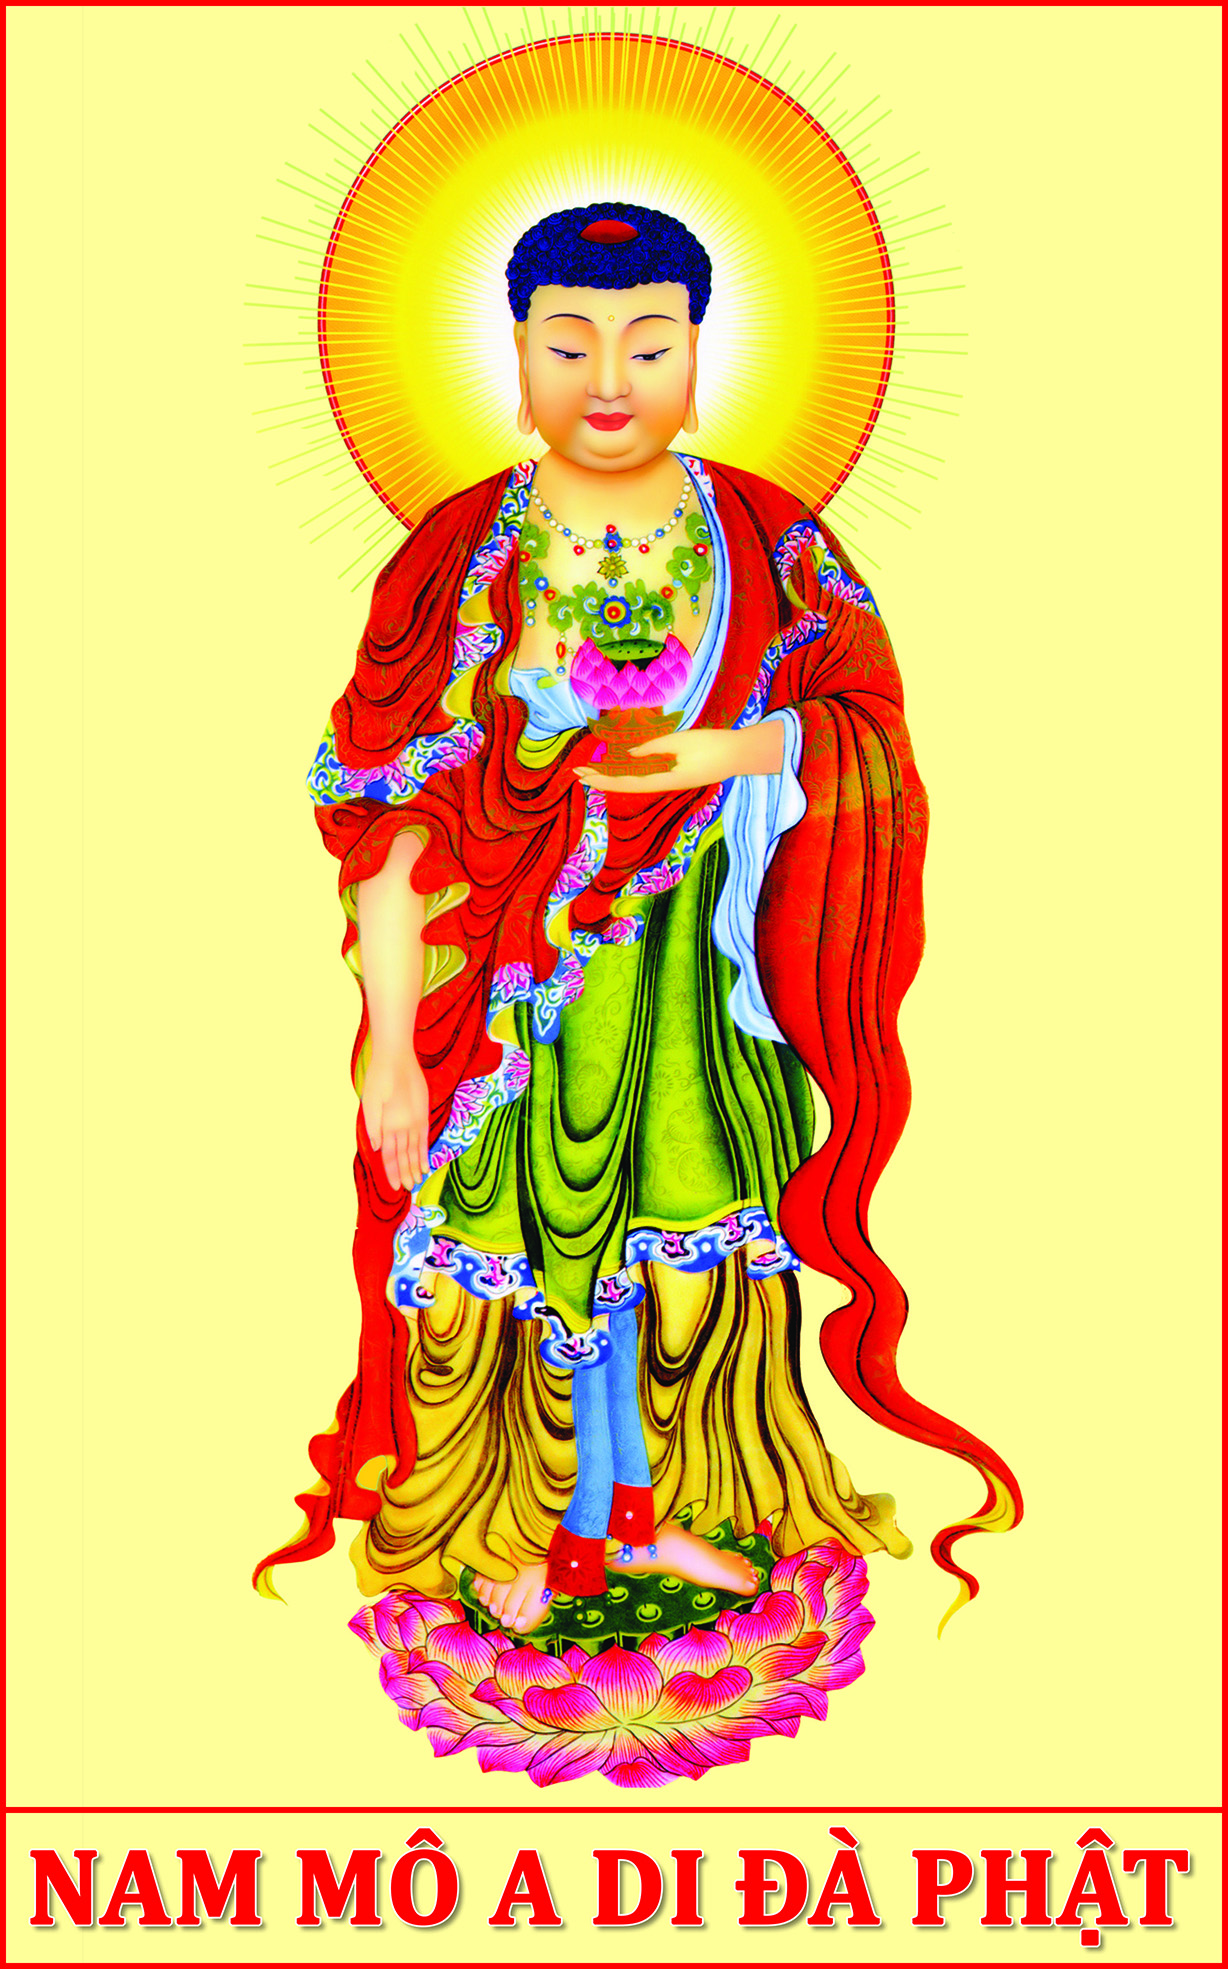 Tranh Phật A Di Đà: Hãy chiêm ngưỡng tranh Phật A Di Đà đầy tinh tuyền và sắc màu tại đây. Với kỹ thuật vẽ tinh xảo, bức tranh sẽ đưa bạn vào một thế giới an lạc và thanh tịnh.